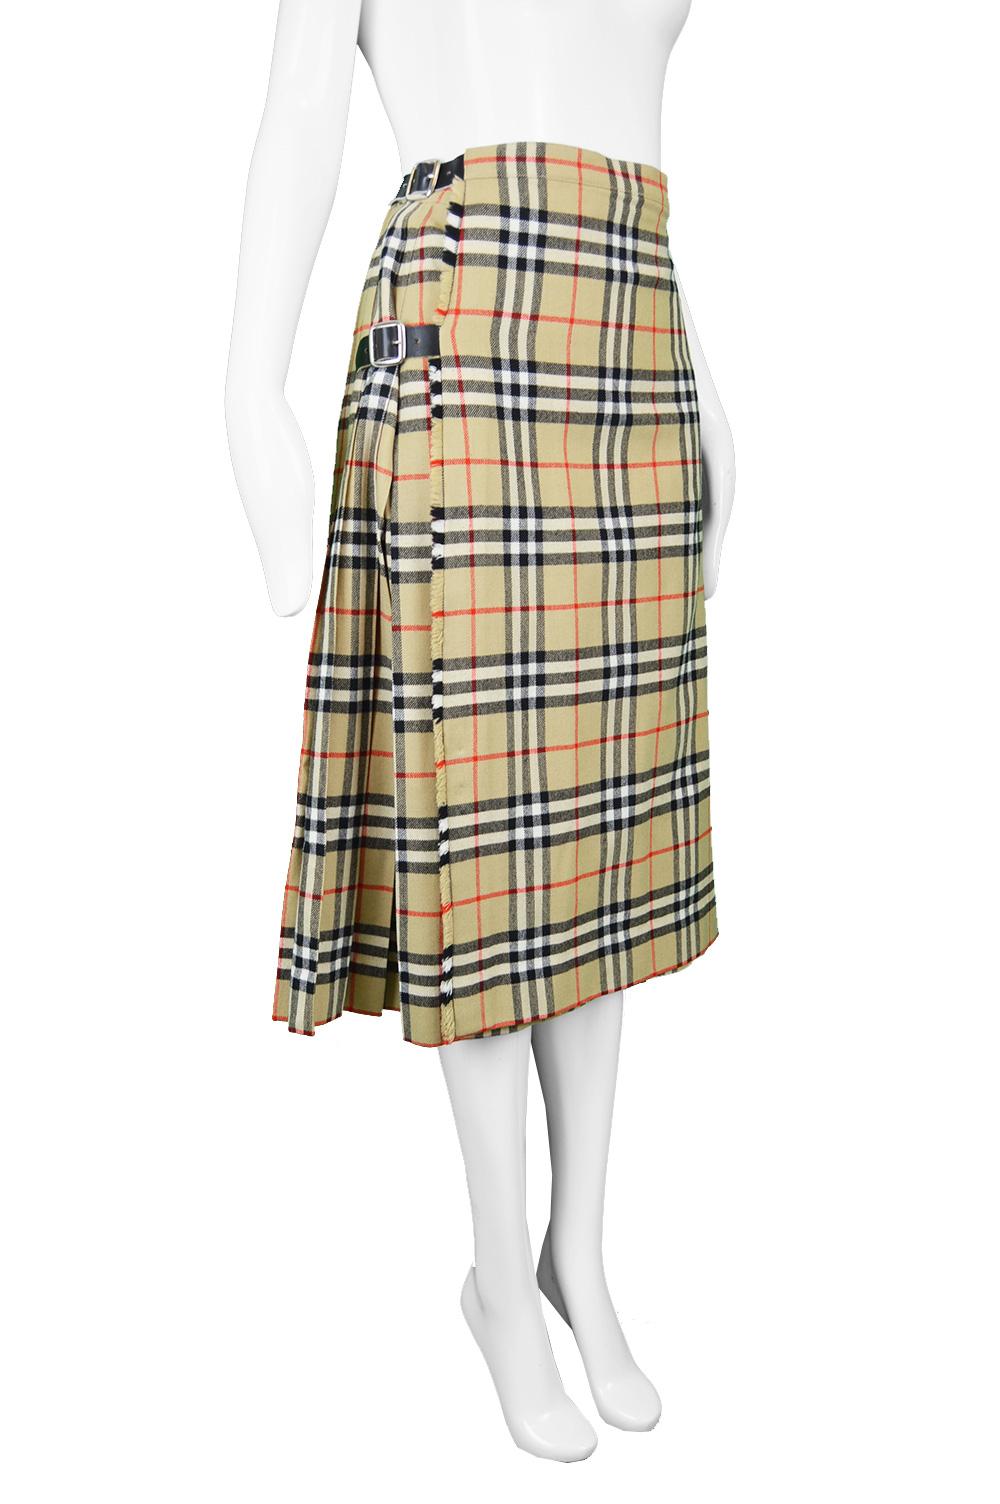 burberry skirt long